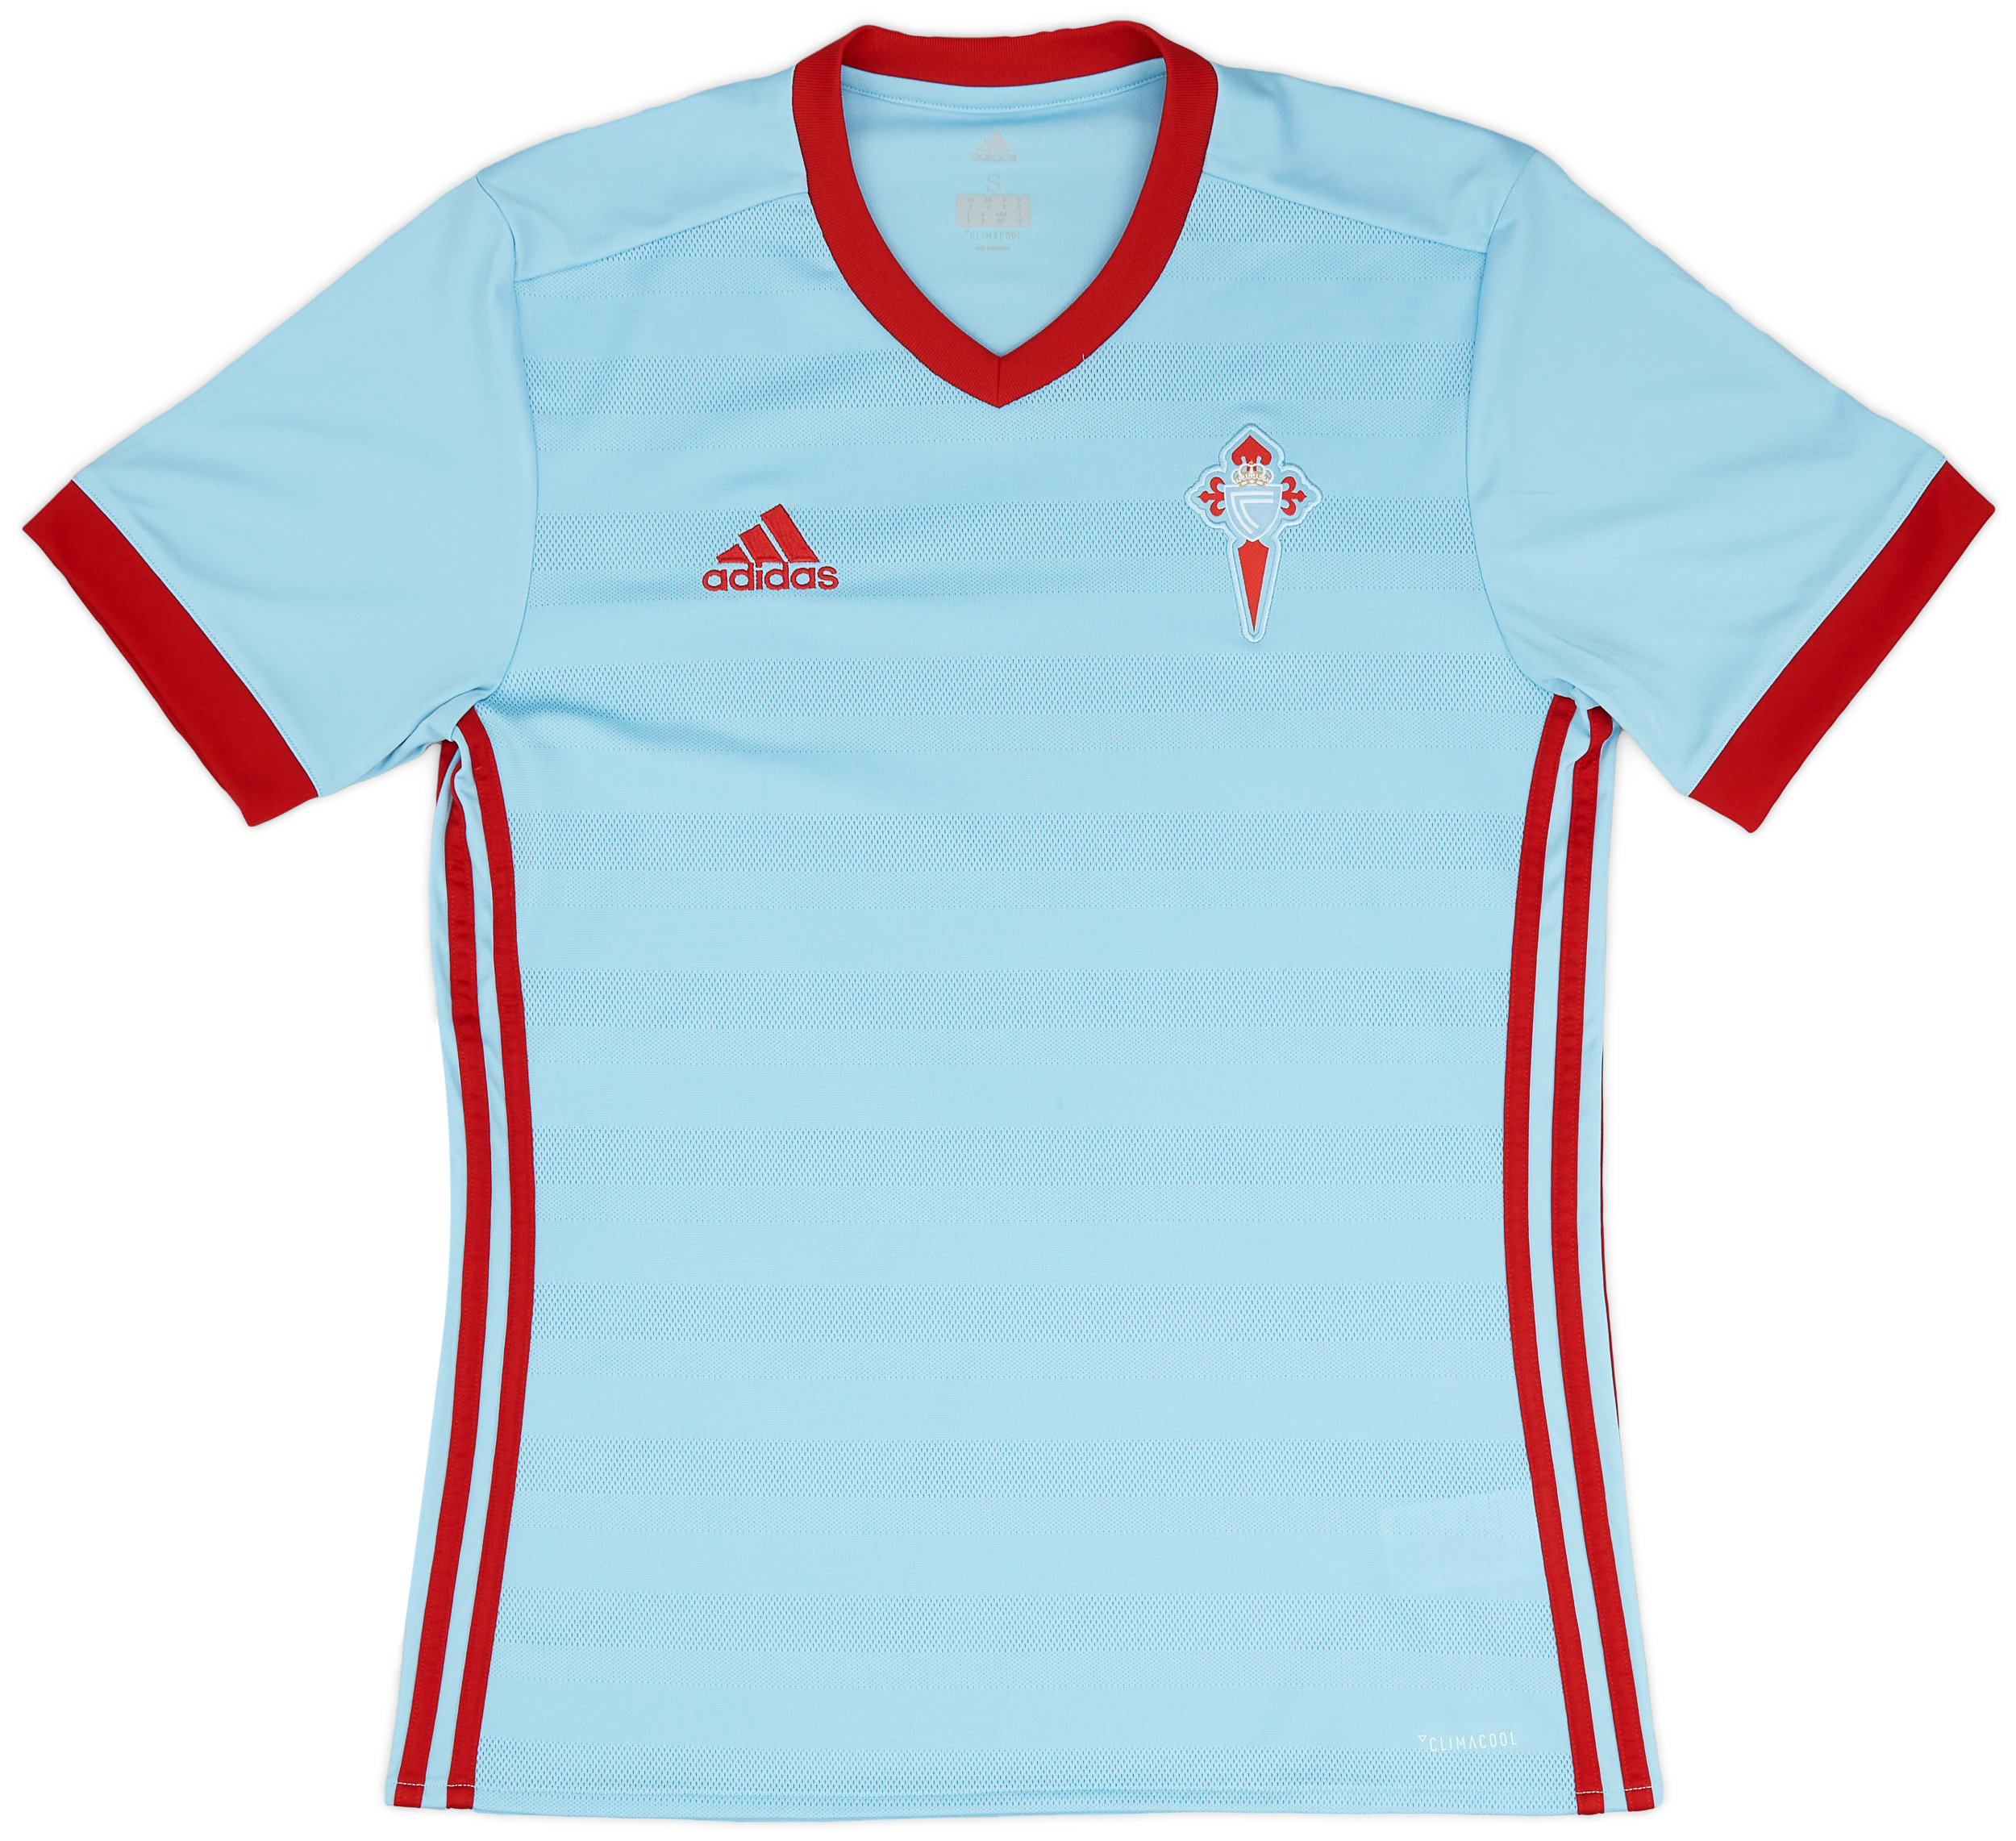 Celta Vigo  home футболка (Original)